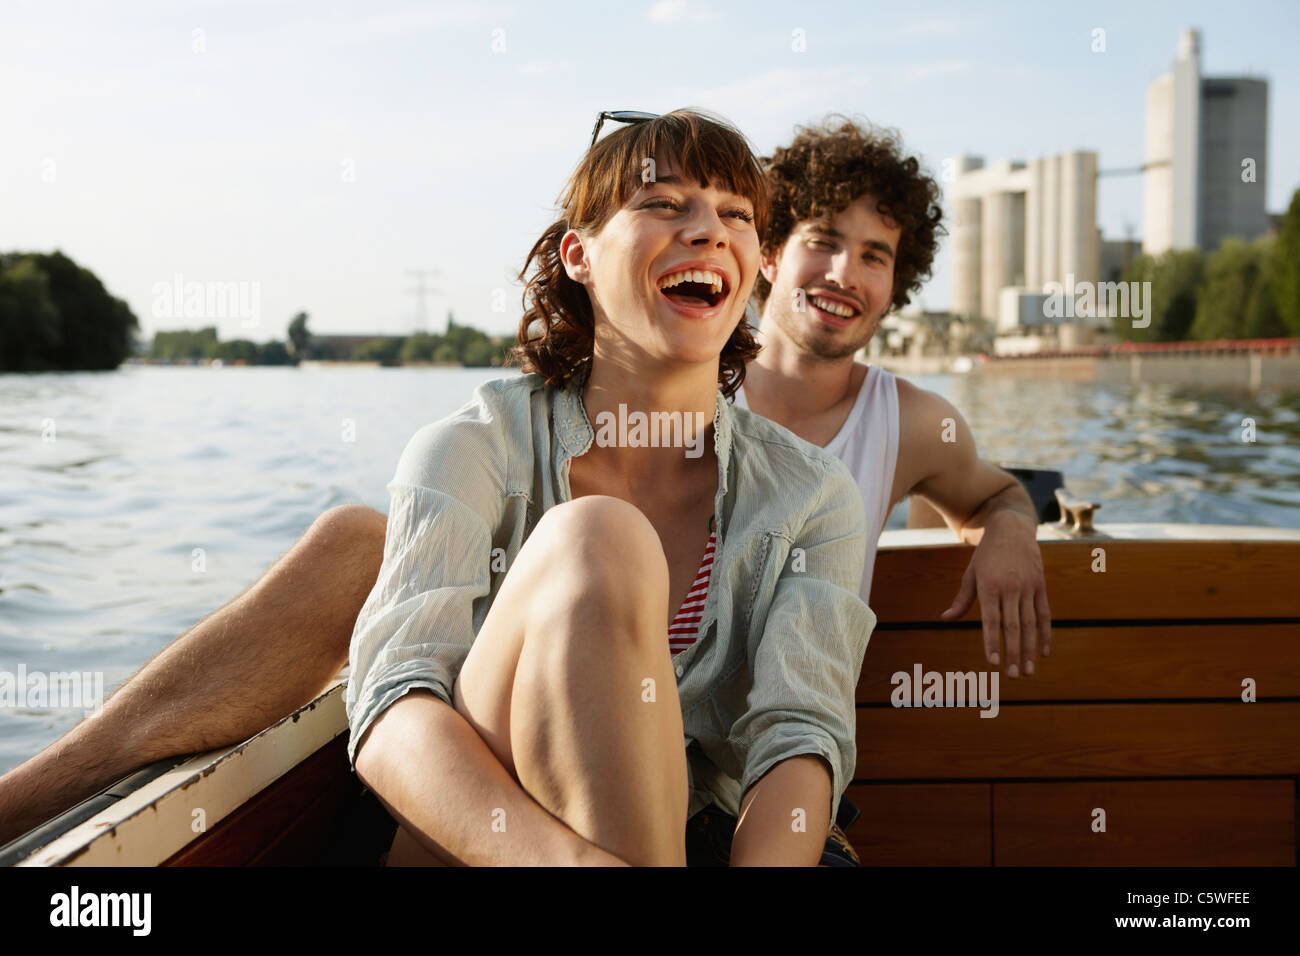 Germania Berlino giovane coppia su imbarcazione a motore, ridendo, ritratto Foto Stock